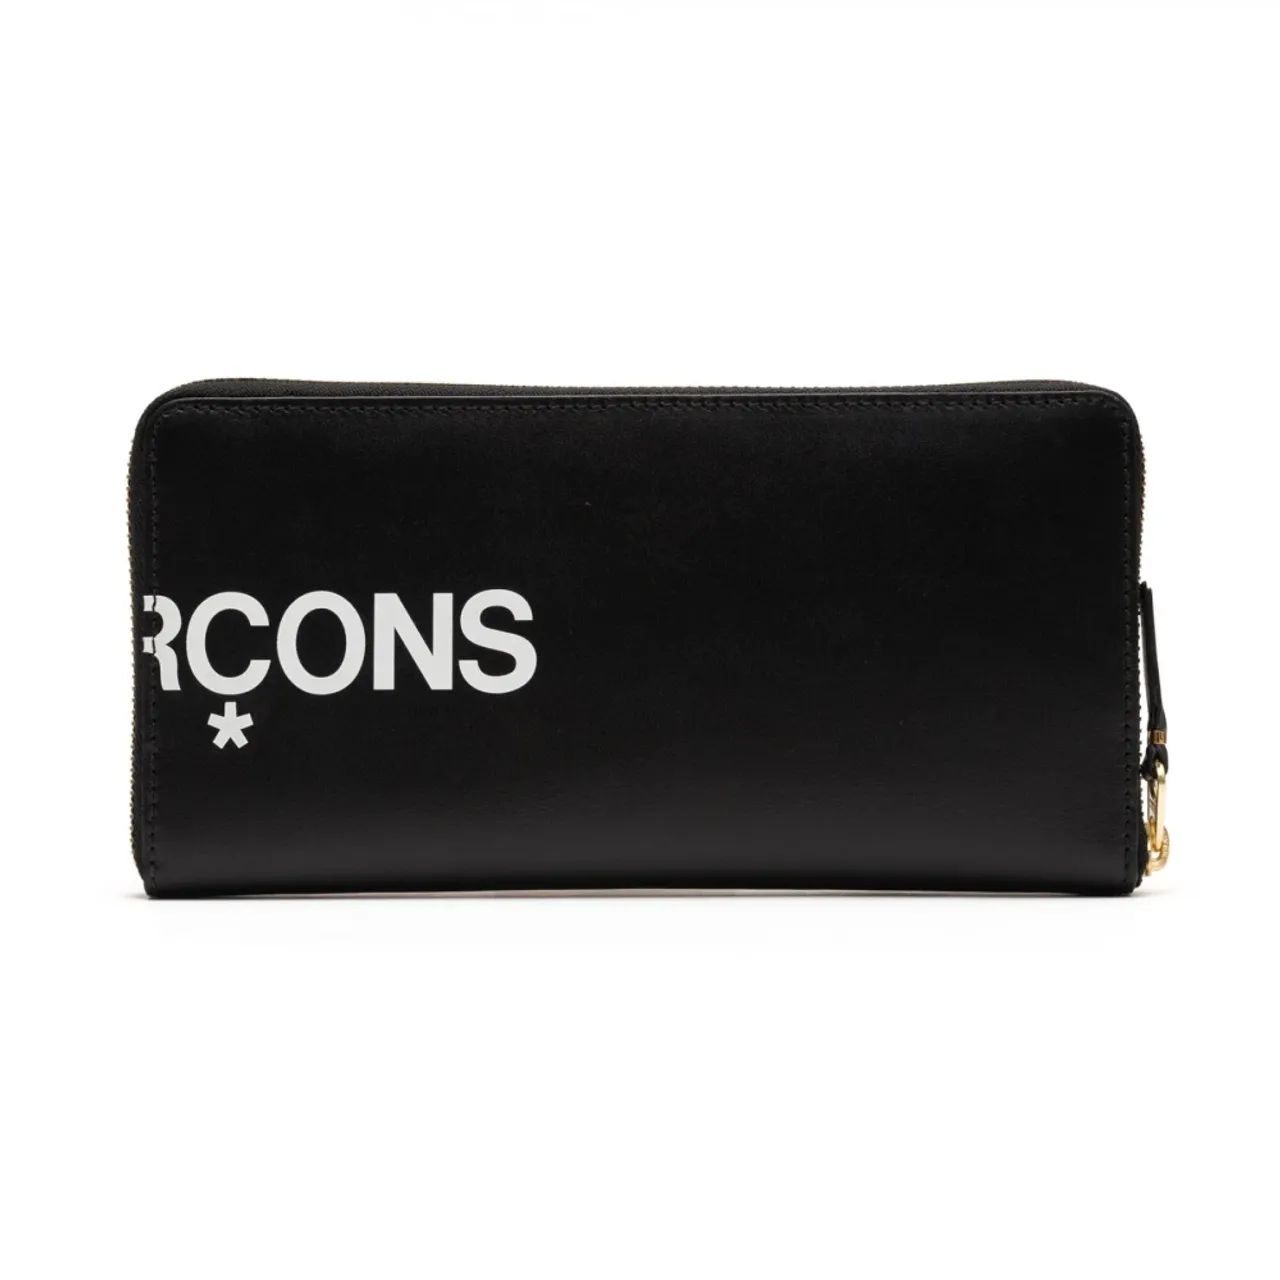 Comme des Garçons , Premium Leather Wallet with Logo Detail ,Black female, Sizes: ONE SIZE